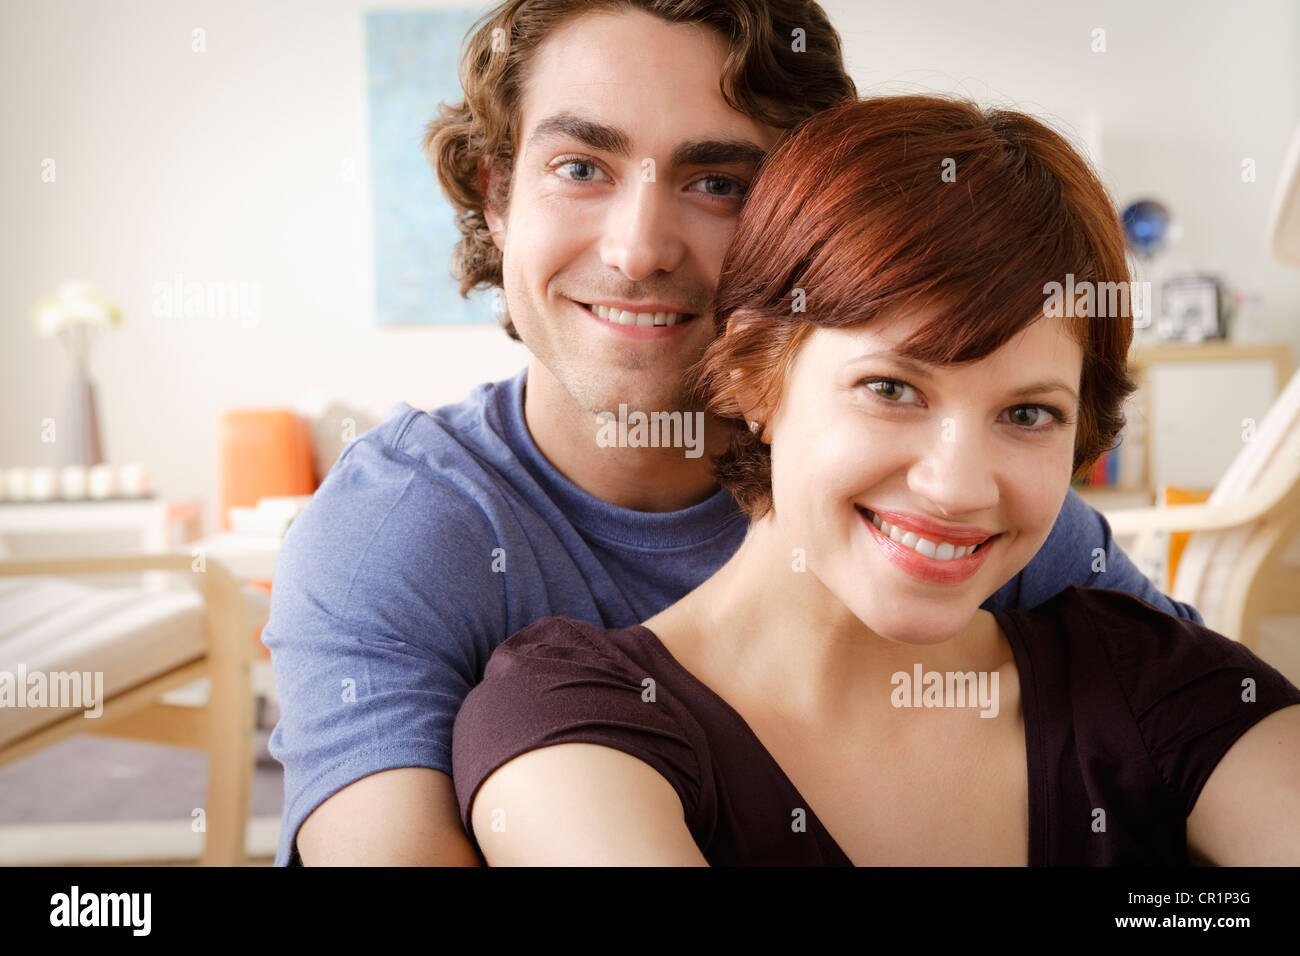 Stati Uniti, California, Los Angeles, ritratto della coppia sorridente Foto Stock